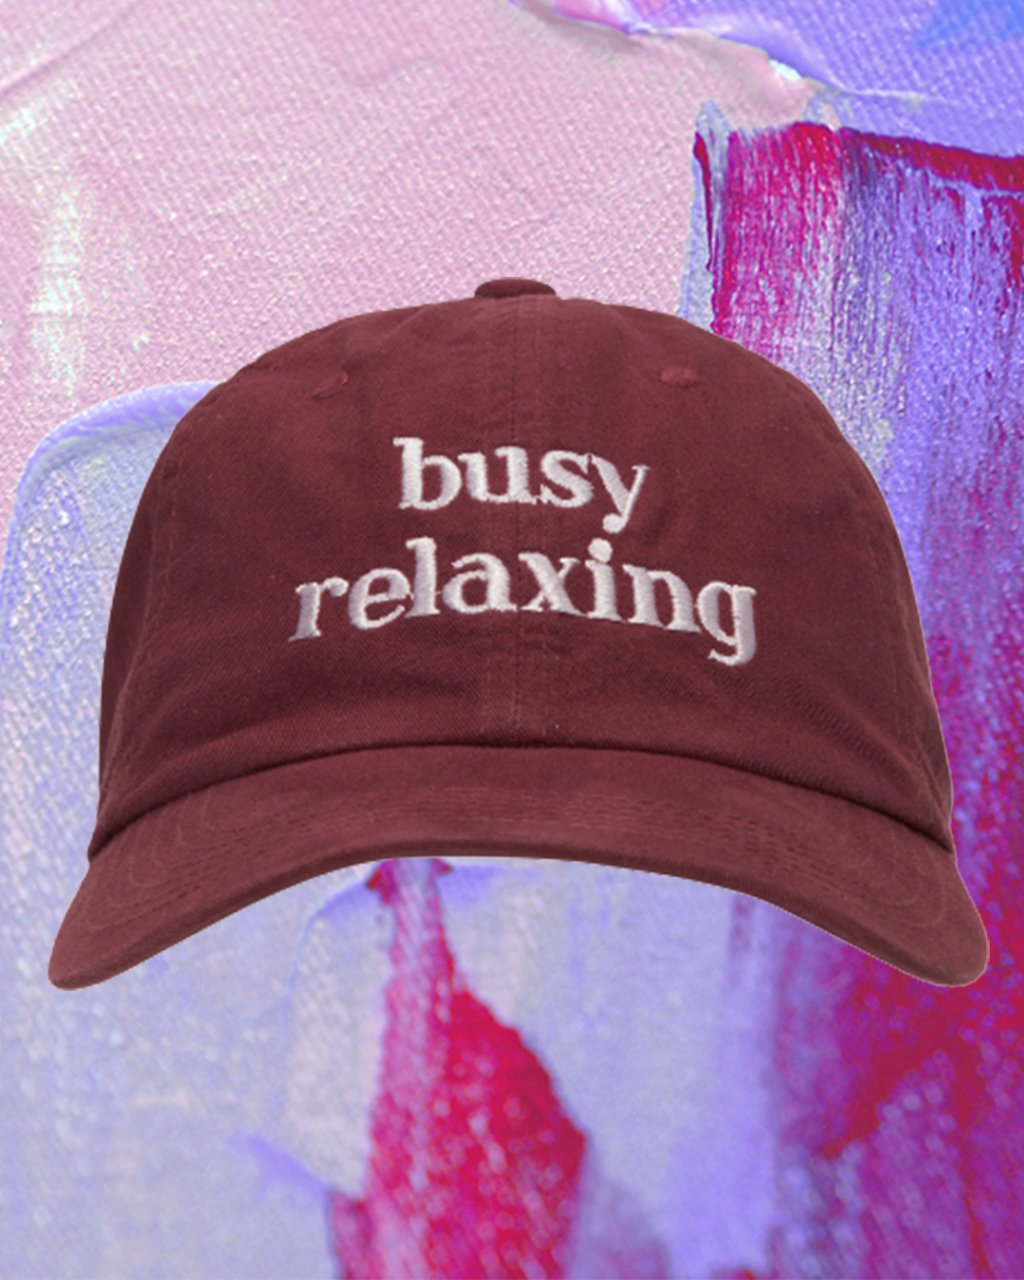 Montagem em fundo lilás e roxo com foto de boné bordô escrito "busy relaxing"